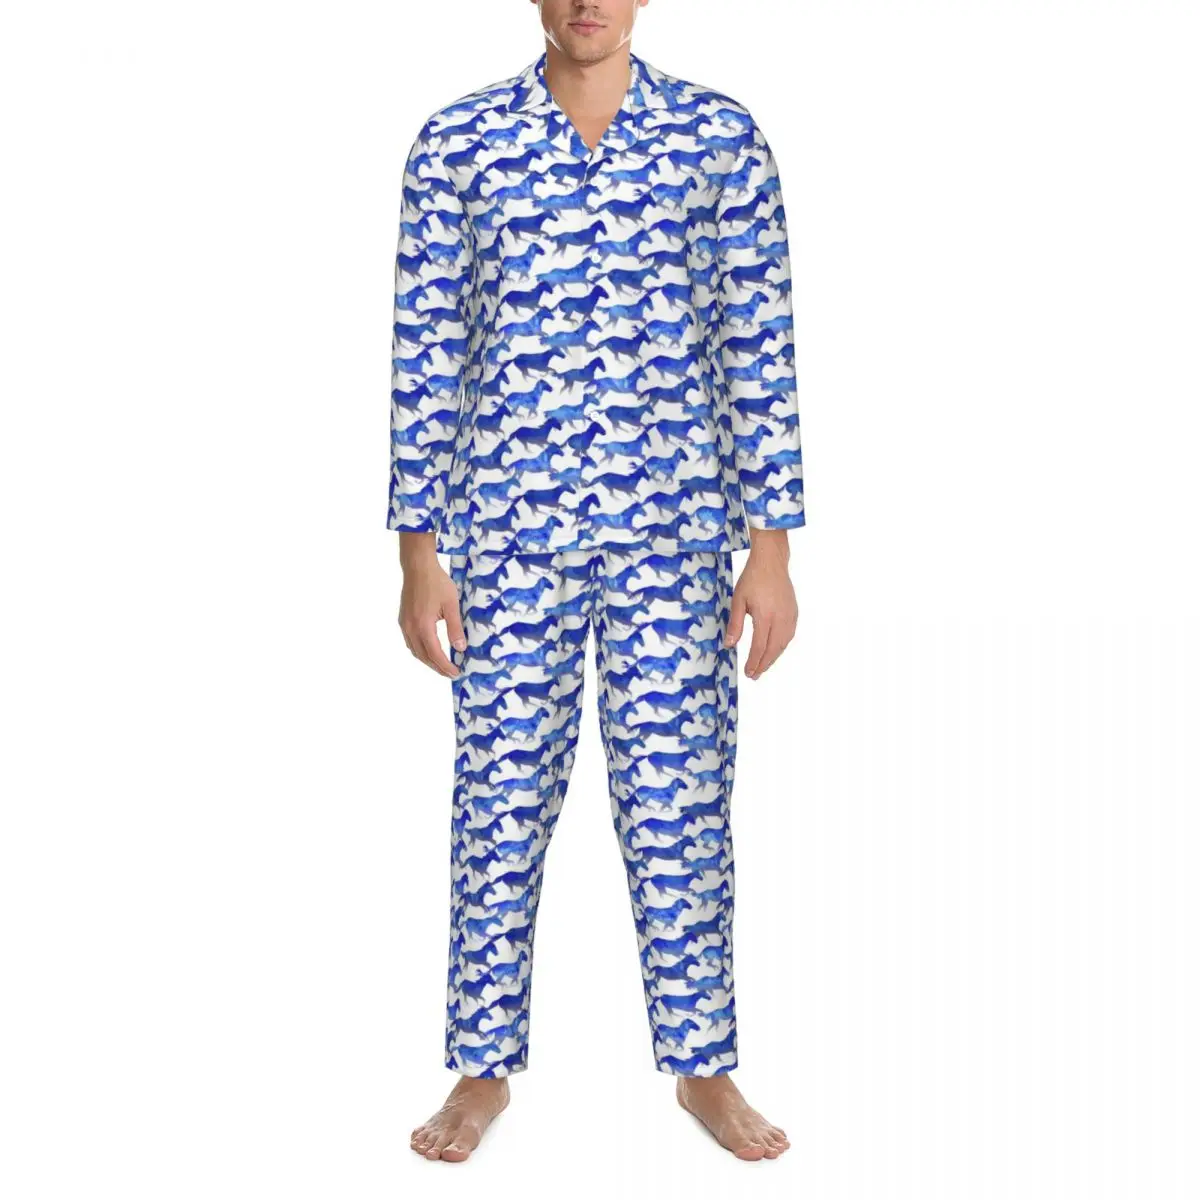 

Пижама с акварельным рисунком лошади, мужская синяя пижама с принтом животных Kawaii, осенняя пижама из 2 предметов, повседневные свободные пижамные комплекты большого размера